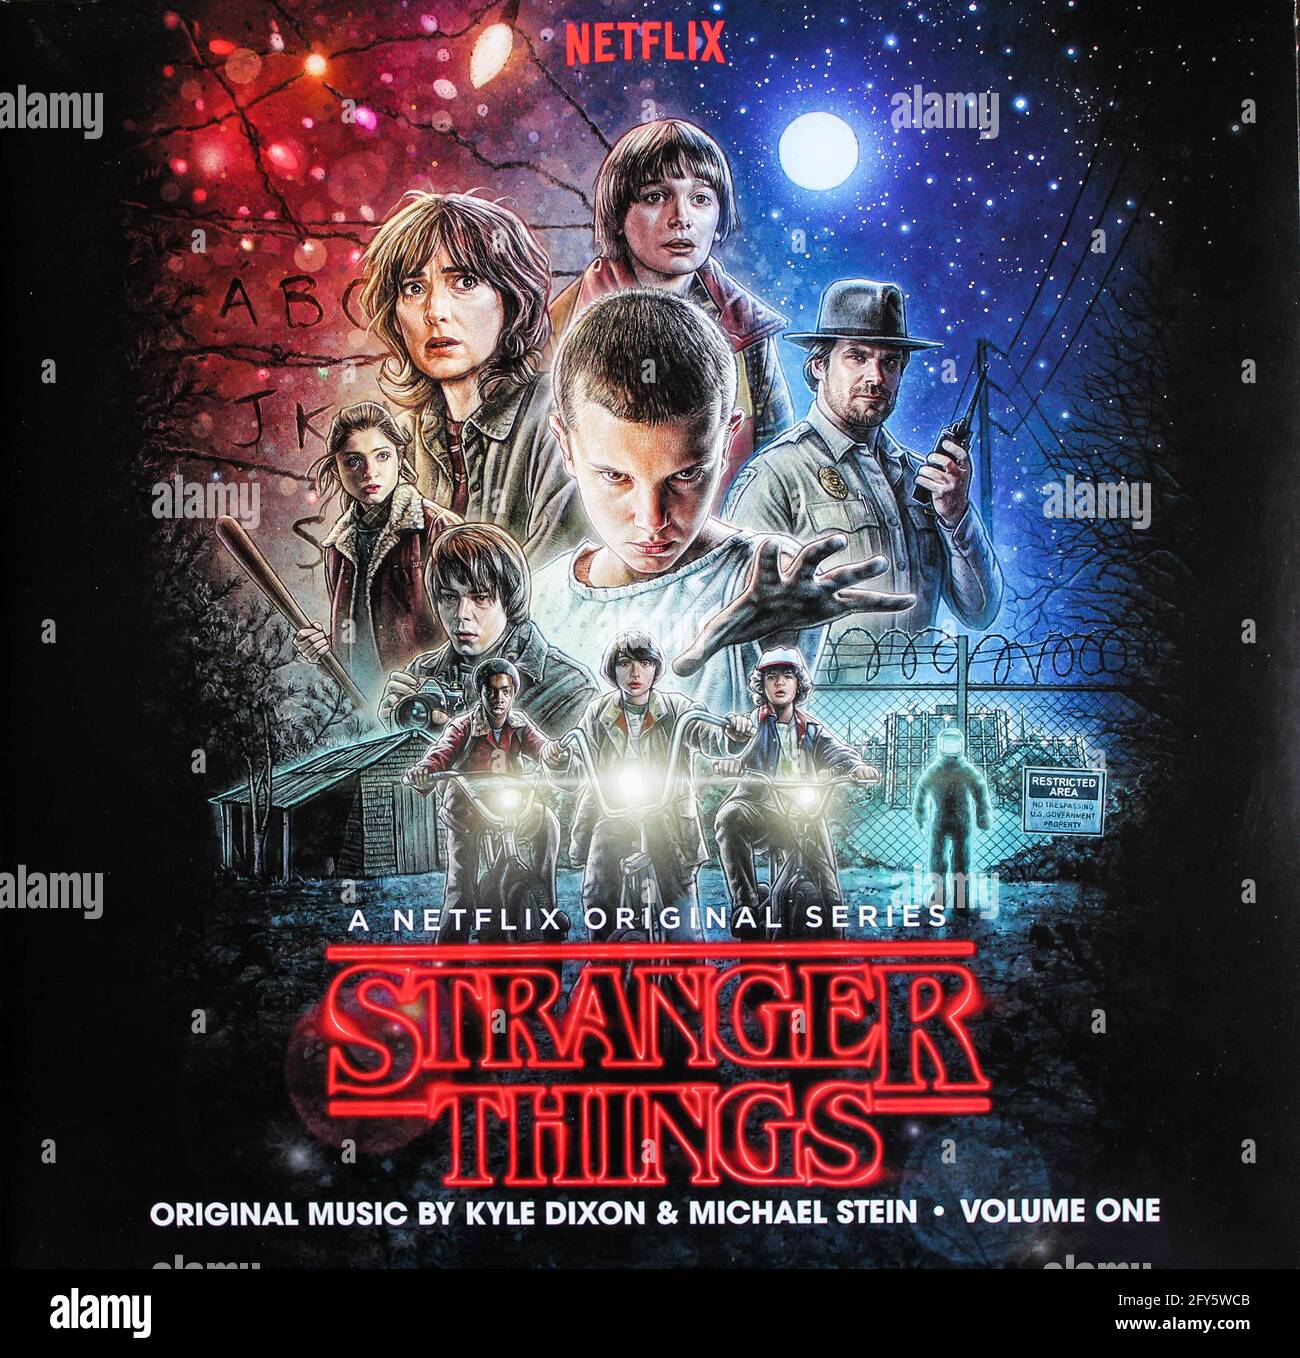 Stranger Things Volumen Una banda sonora en vinilo disco LP de la serie de televisión en Netflix. Portada del álbum Foto de stock